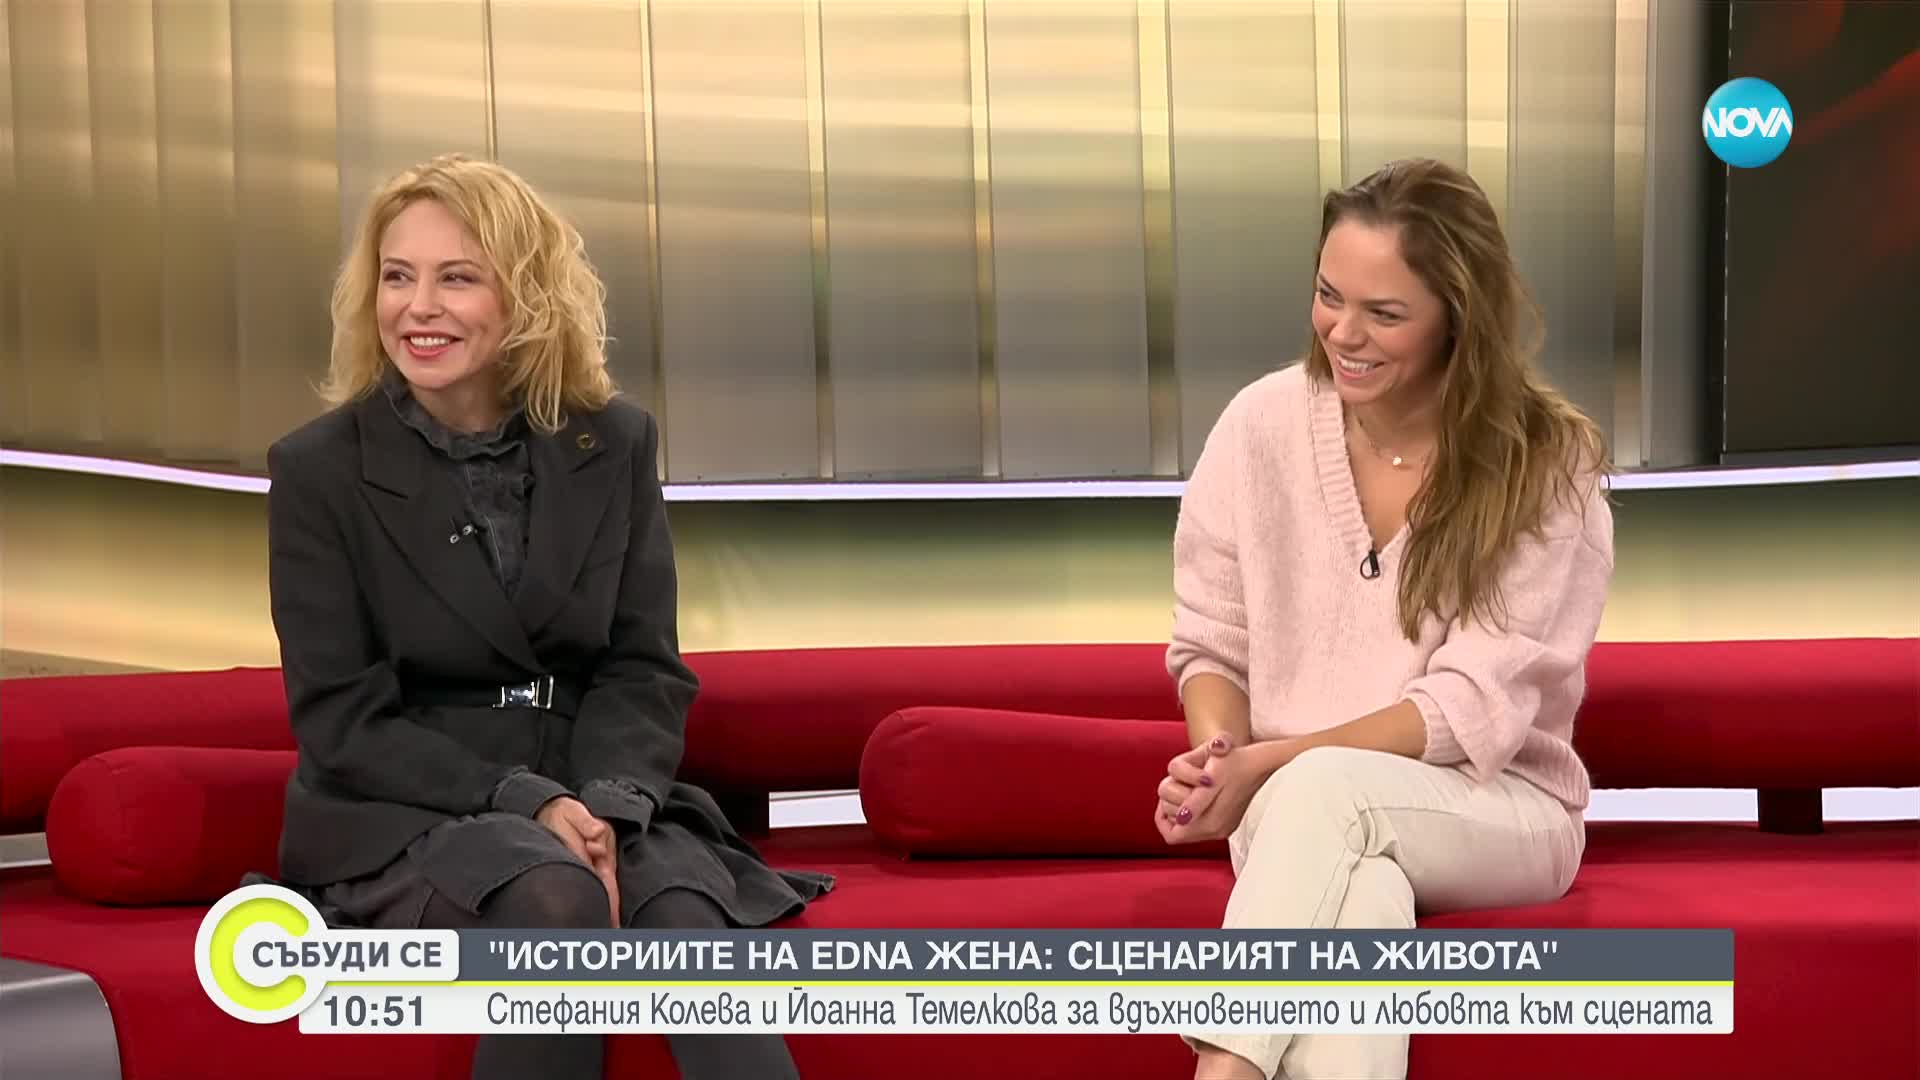 "Историите на Edna жена: Сценарият на живота": Стефания Колева и Йоанна Темелкова за вдъхновението и